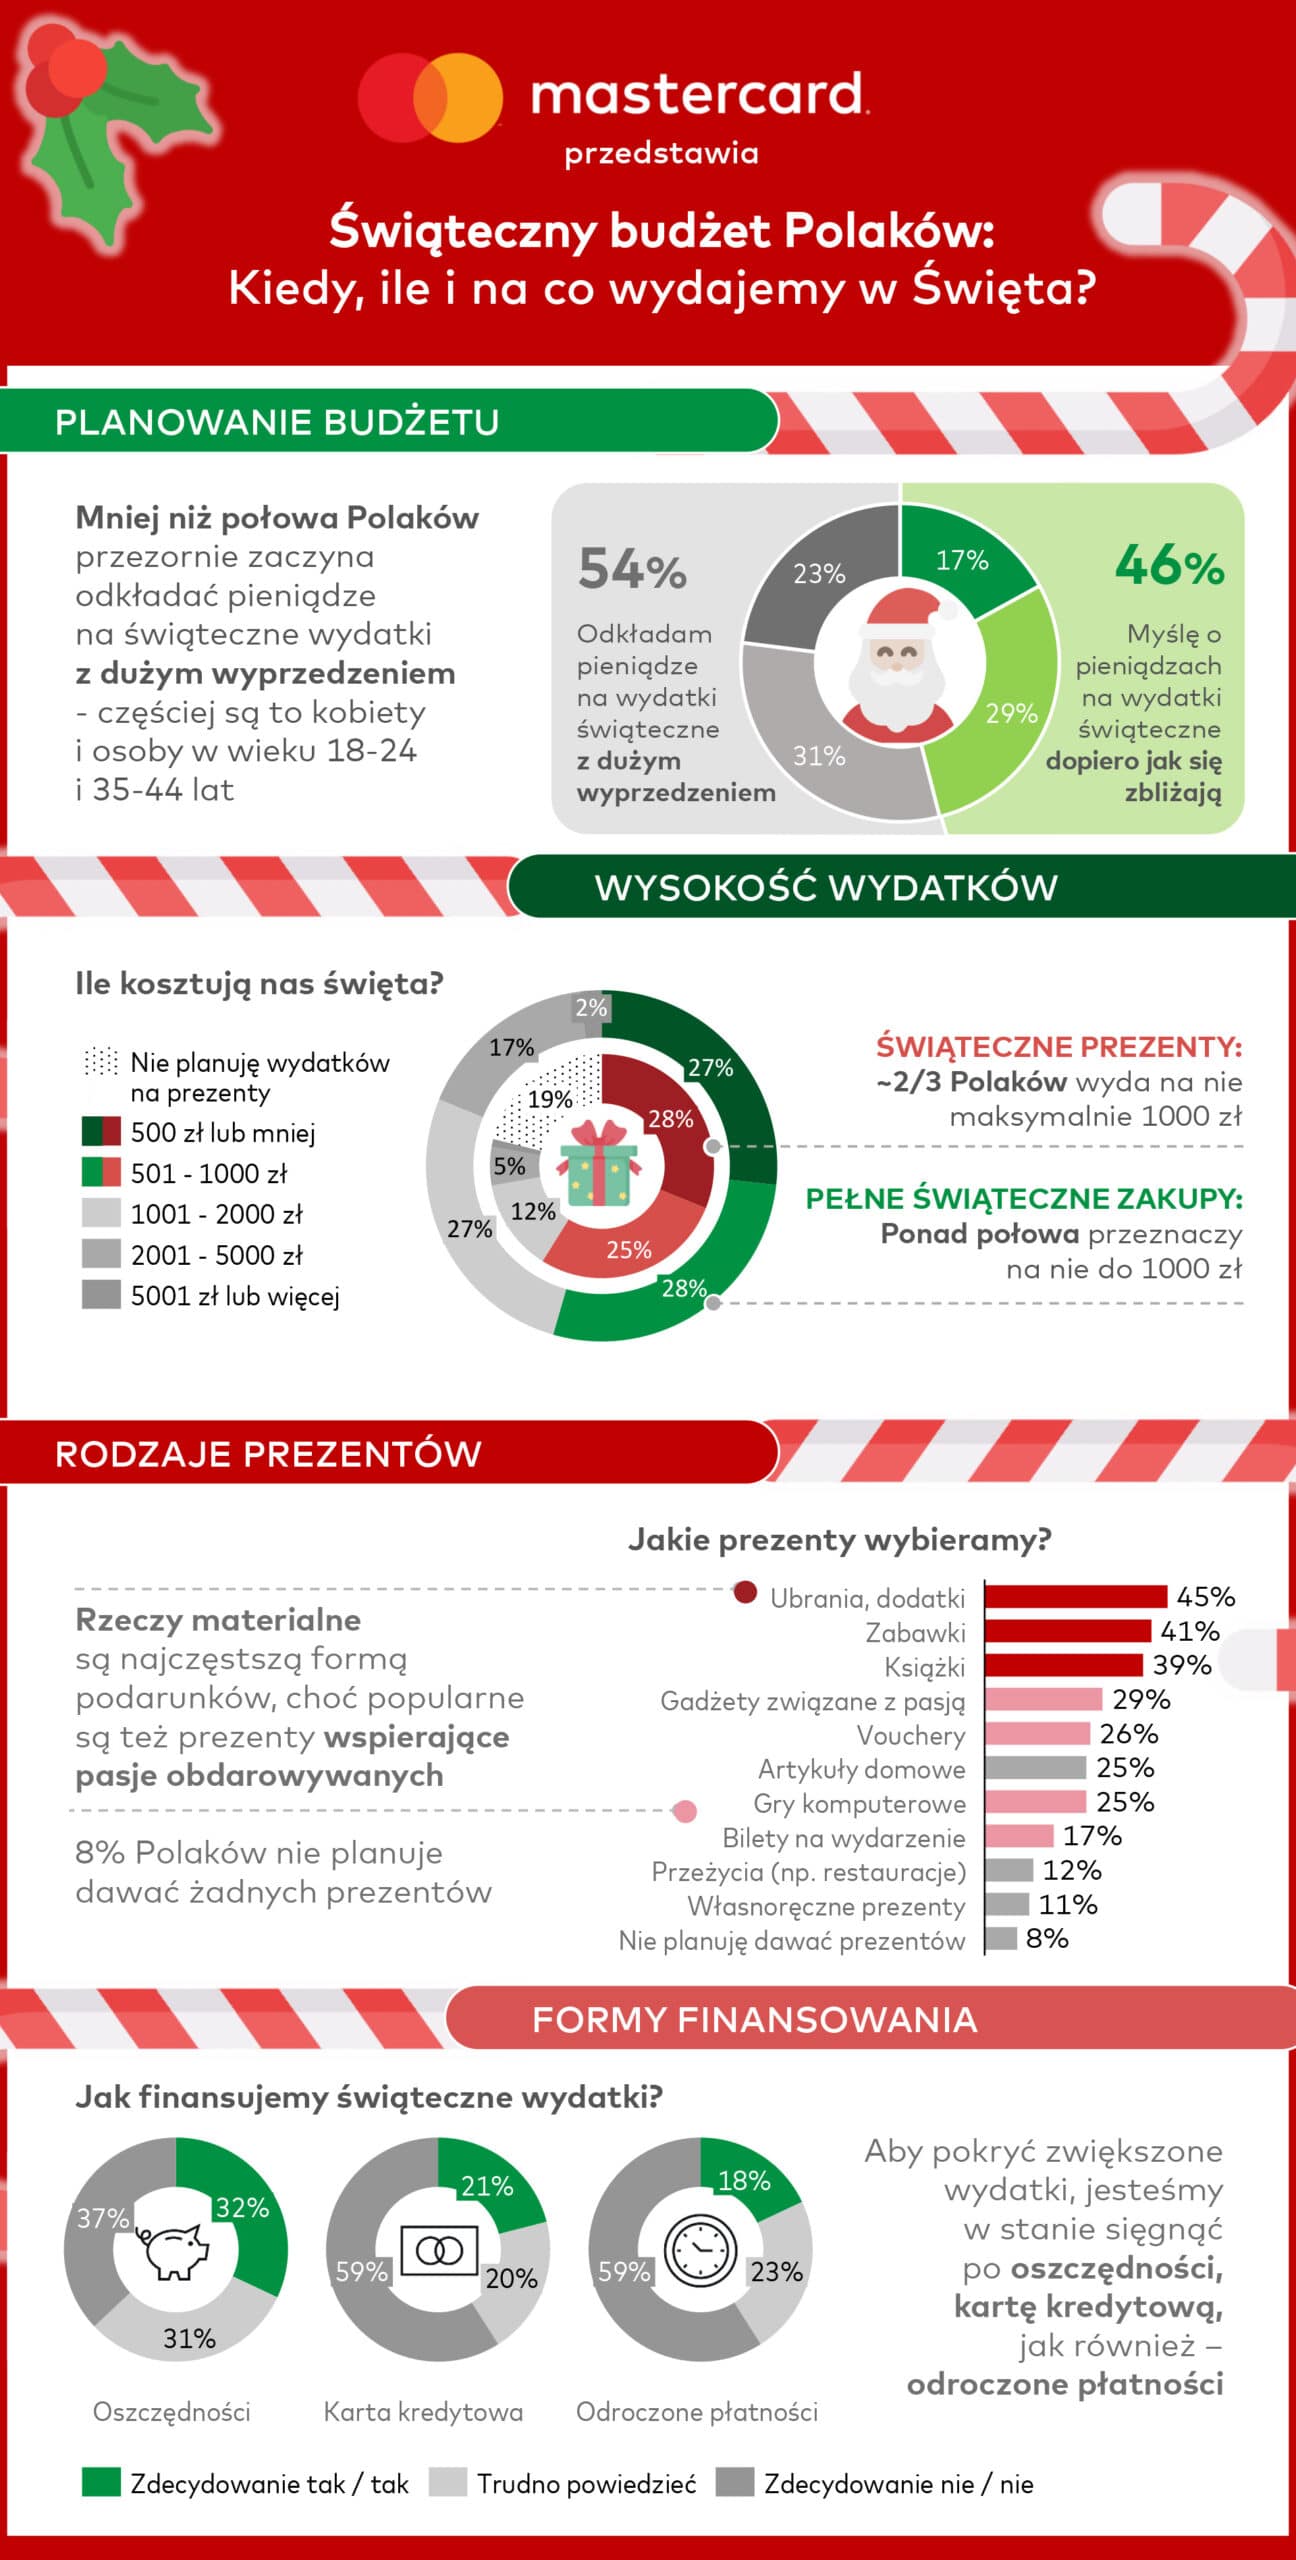 świąteczny budżet Polaków, czyli kiedy, ile i na co wydajemy w święta Bożego Narodzenia 